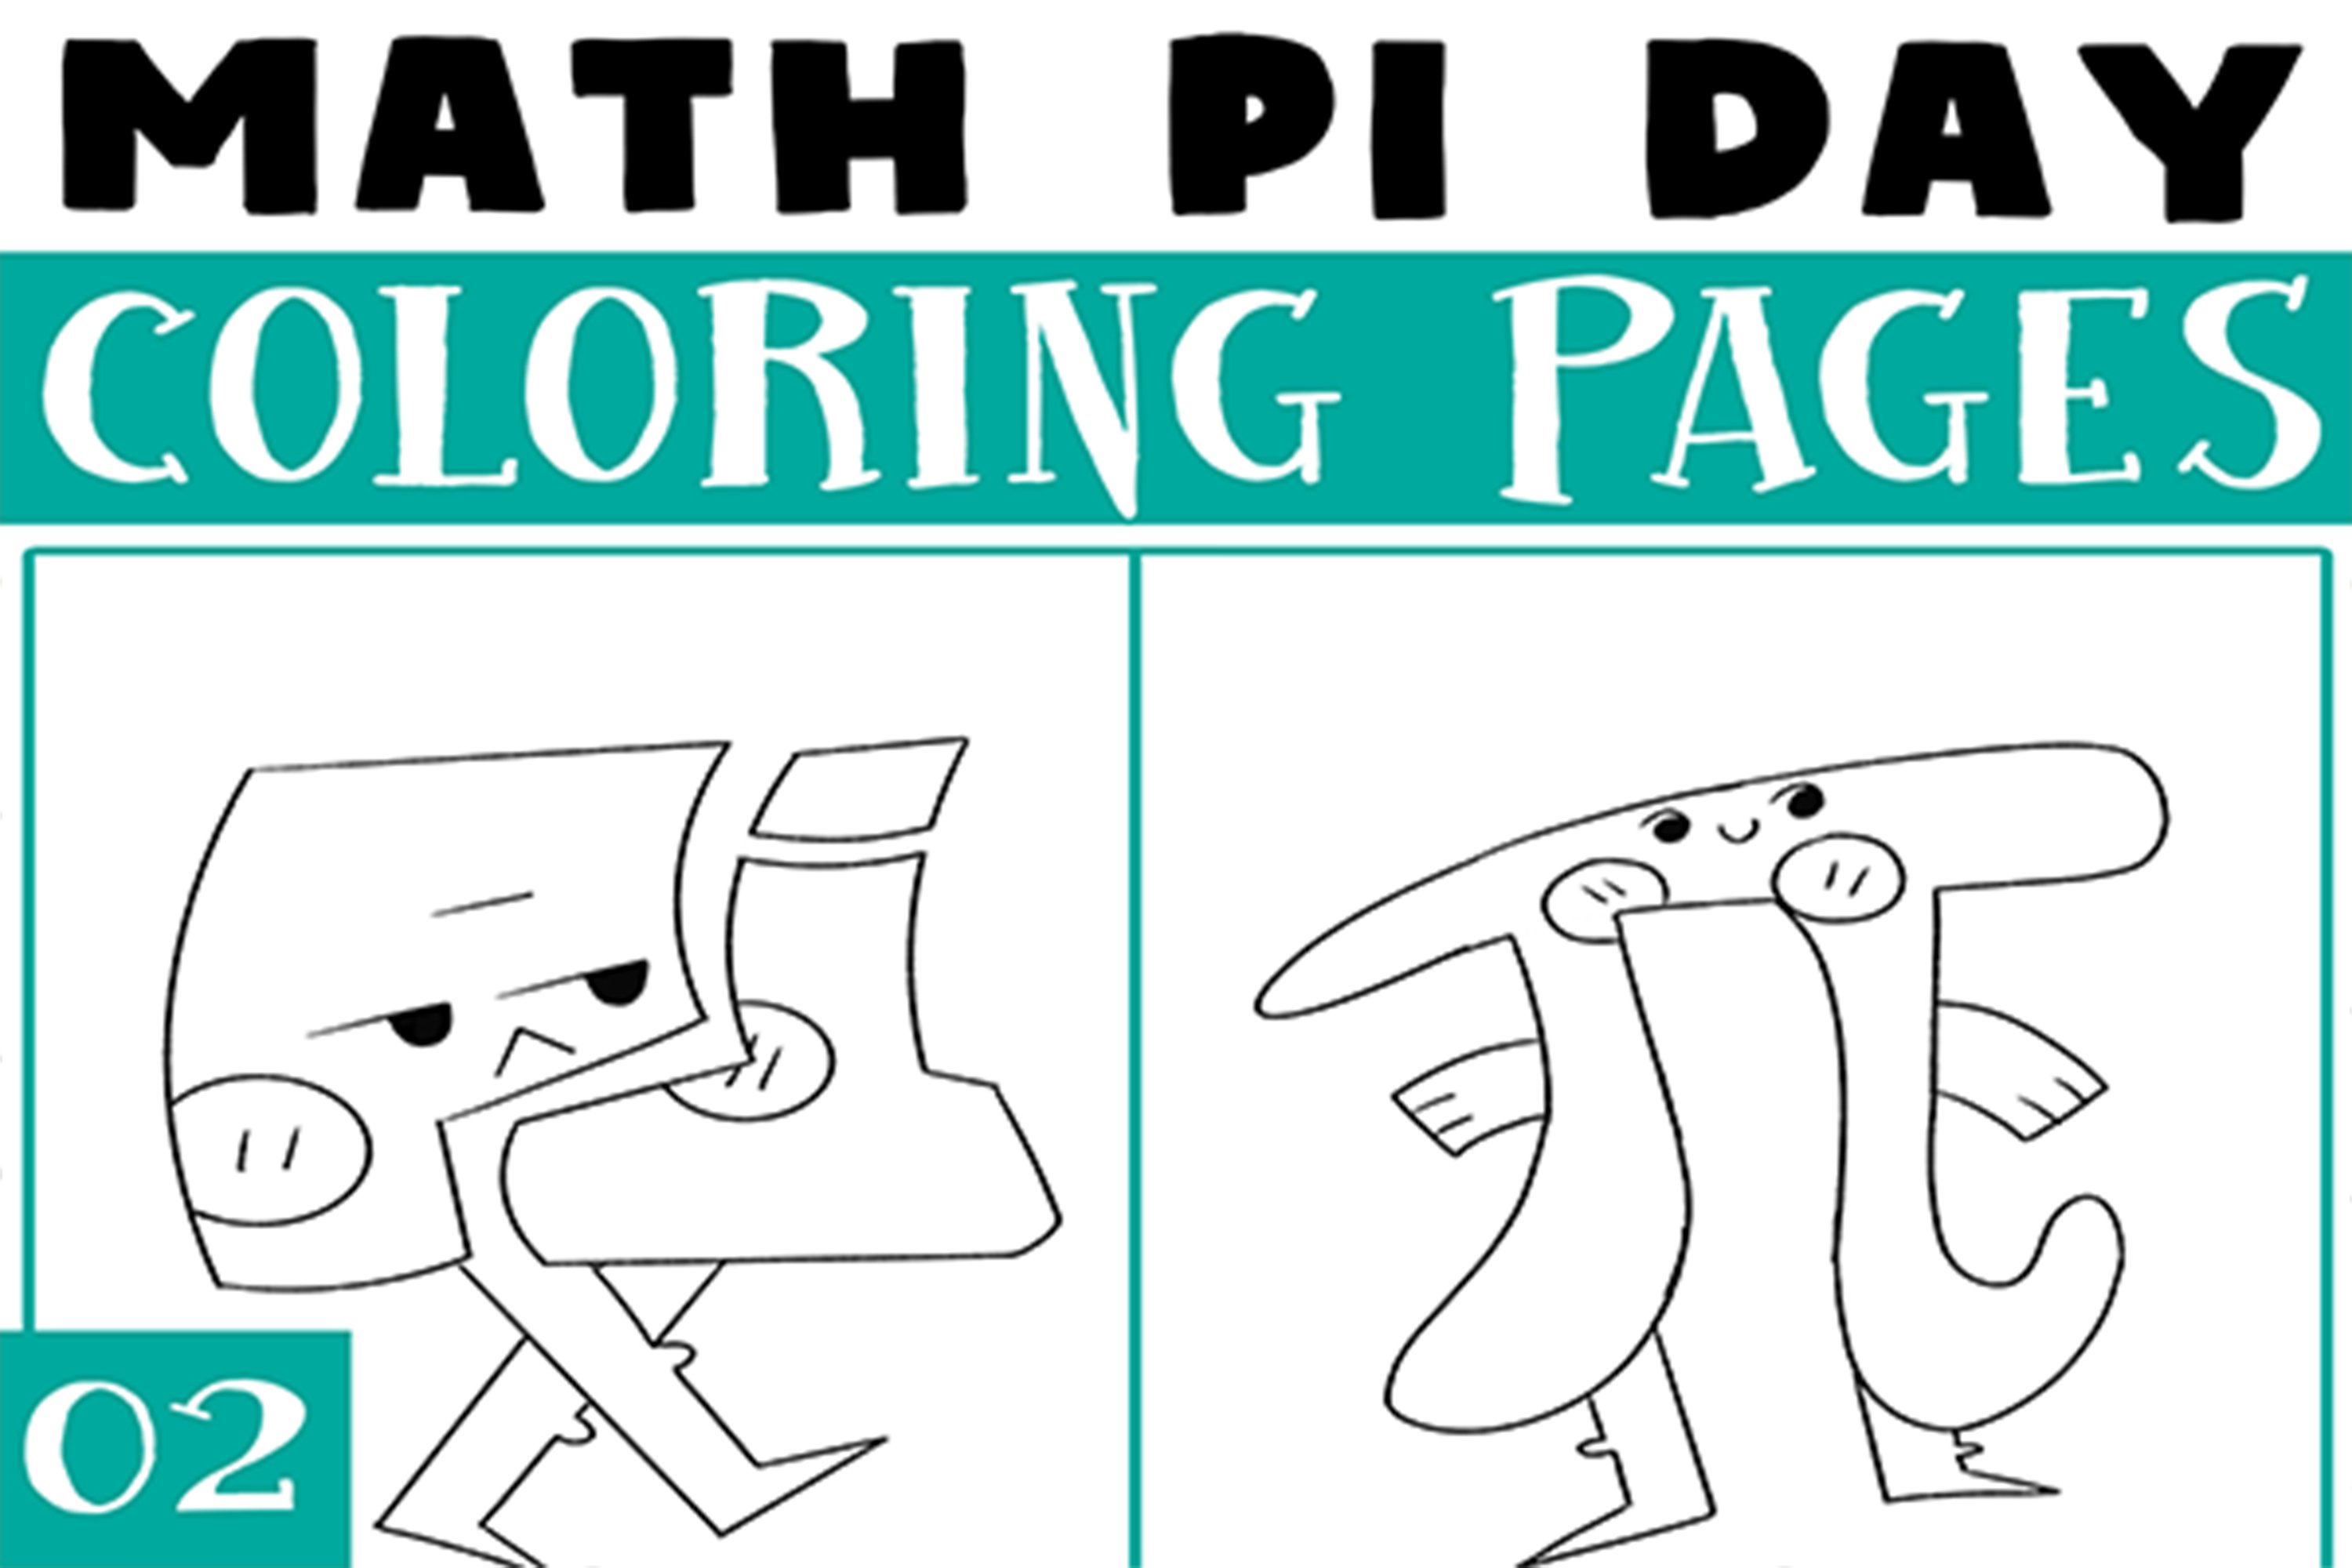 Math coloring pages design bundles